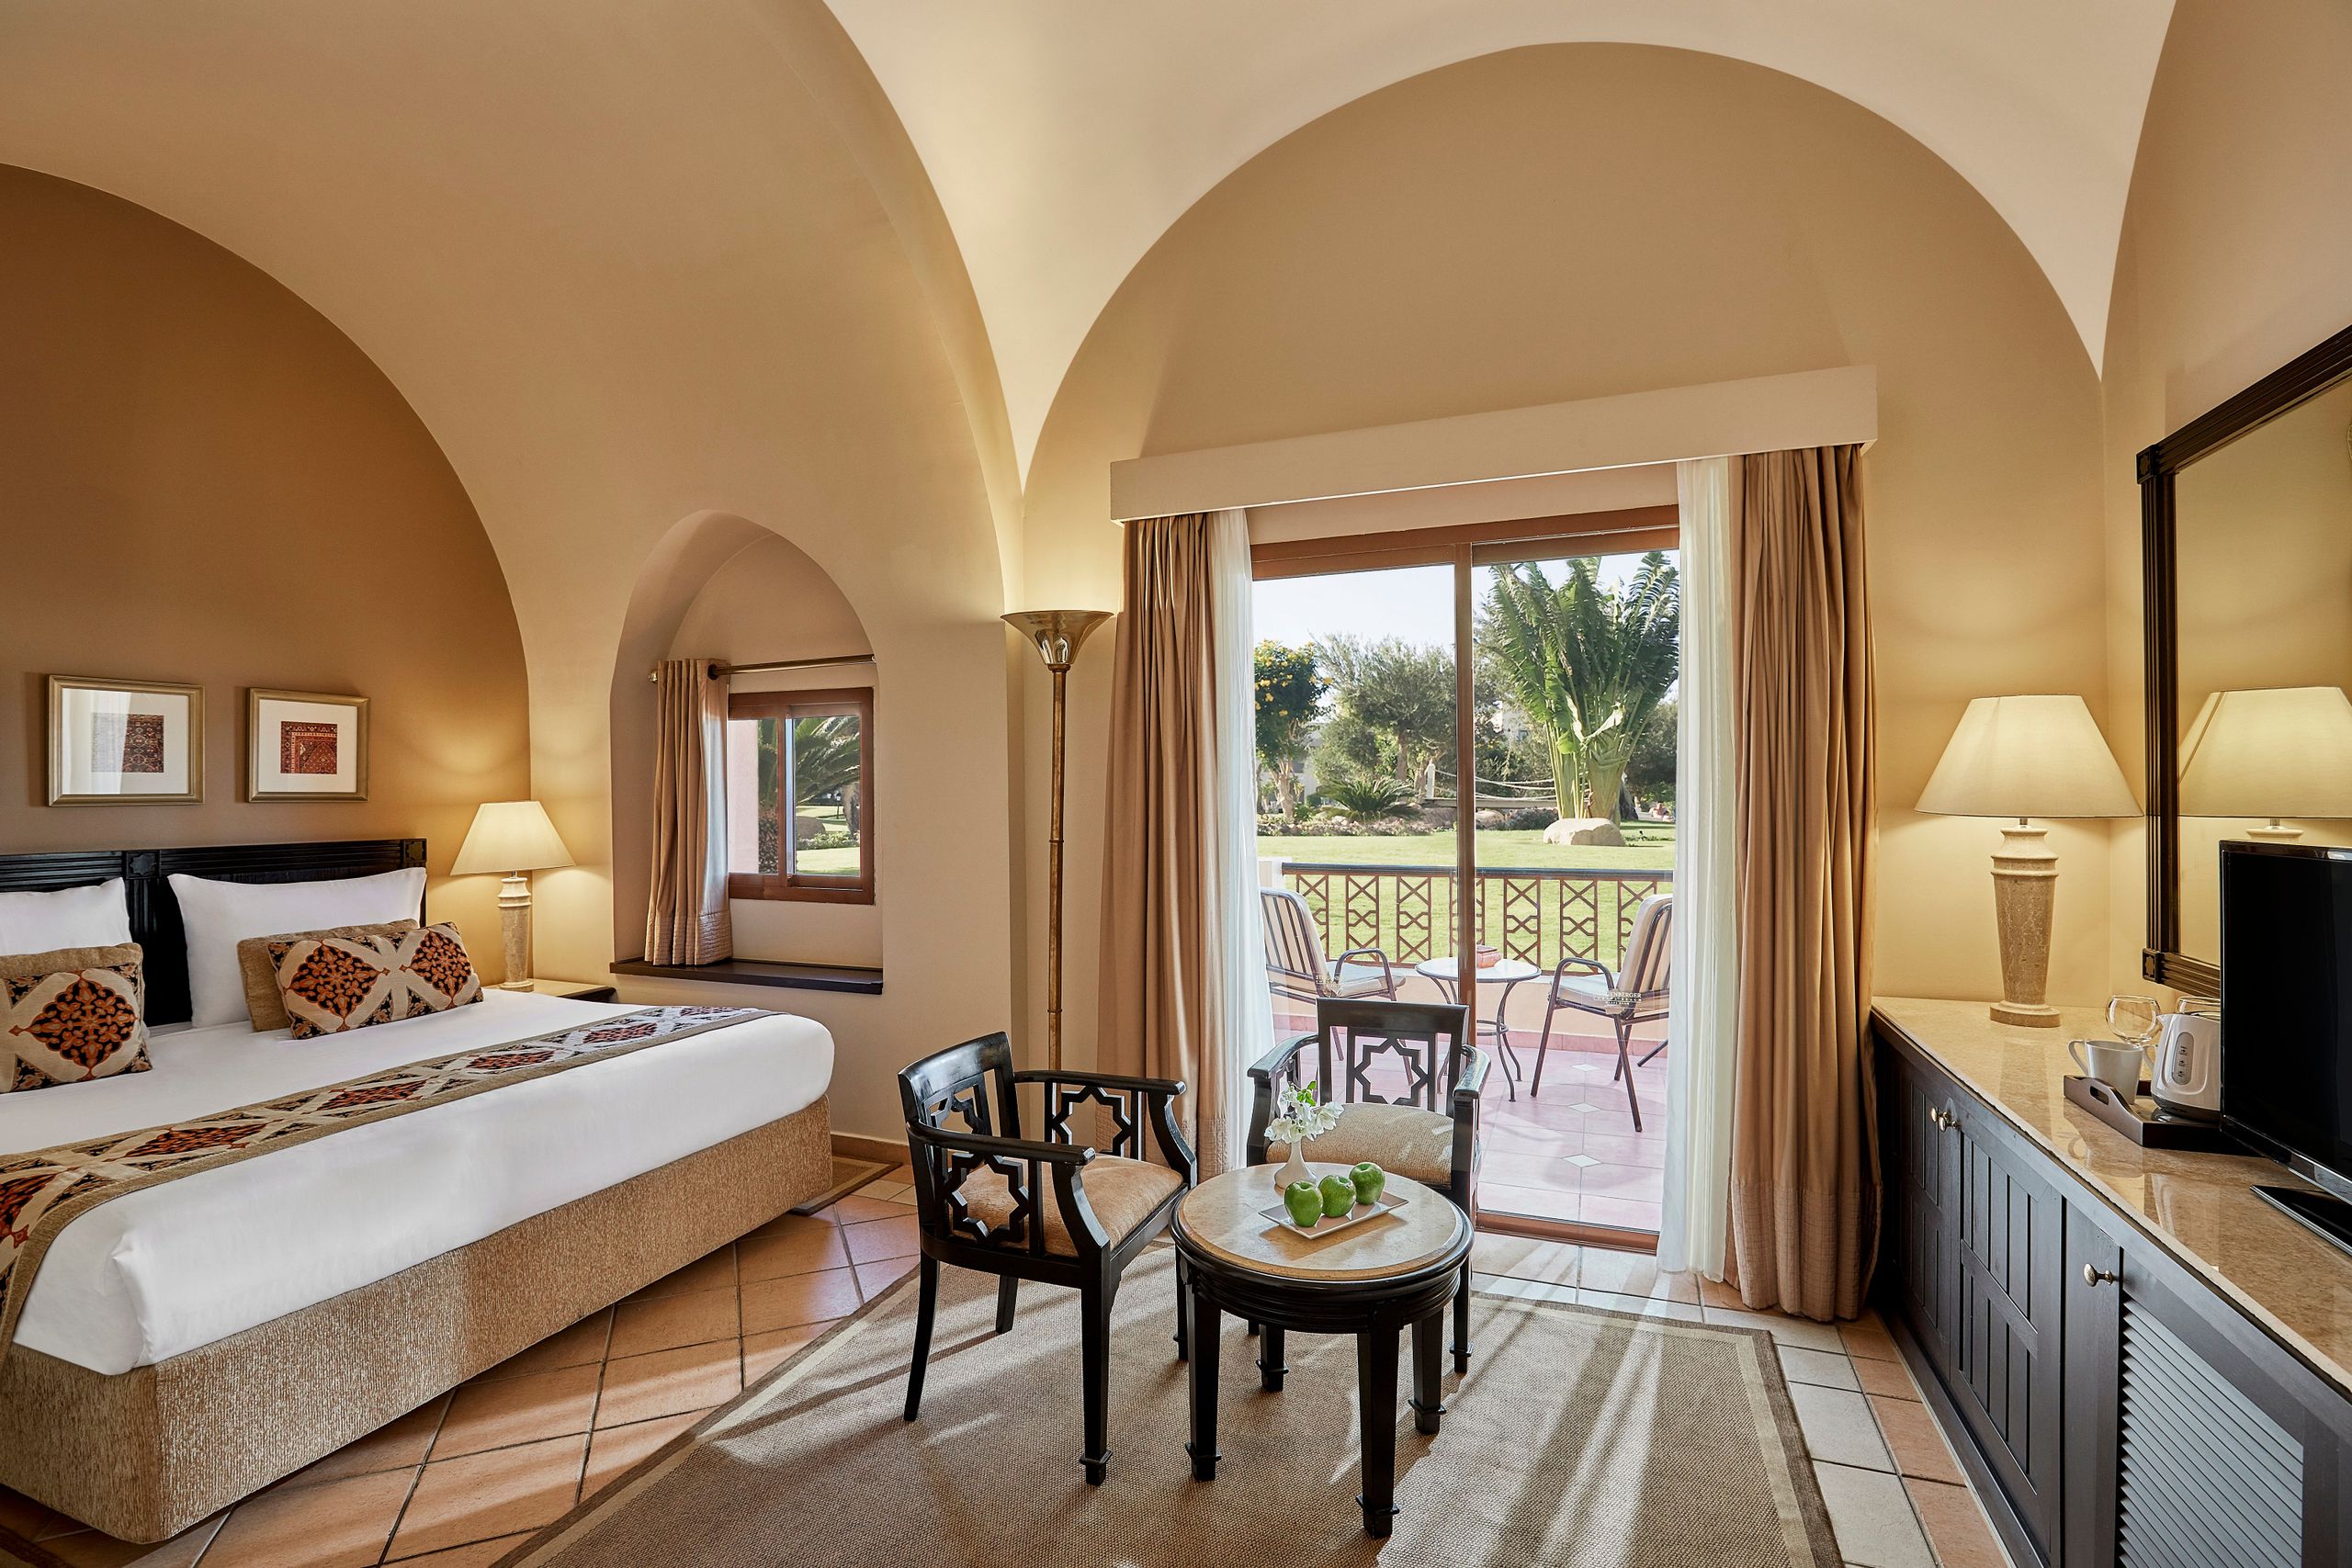 Steigenberger Coraya Beach Hotel, Marsa Alam - Superior Room with garden view